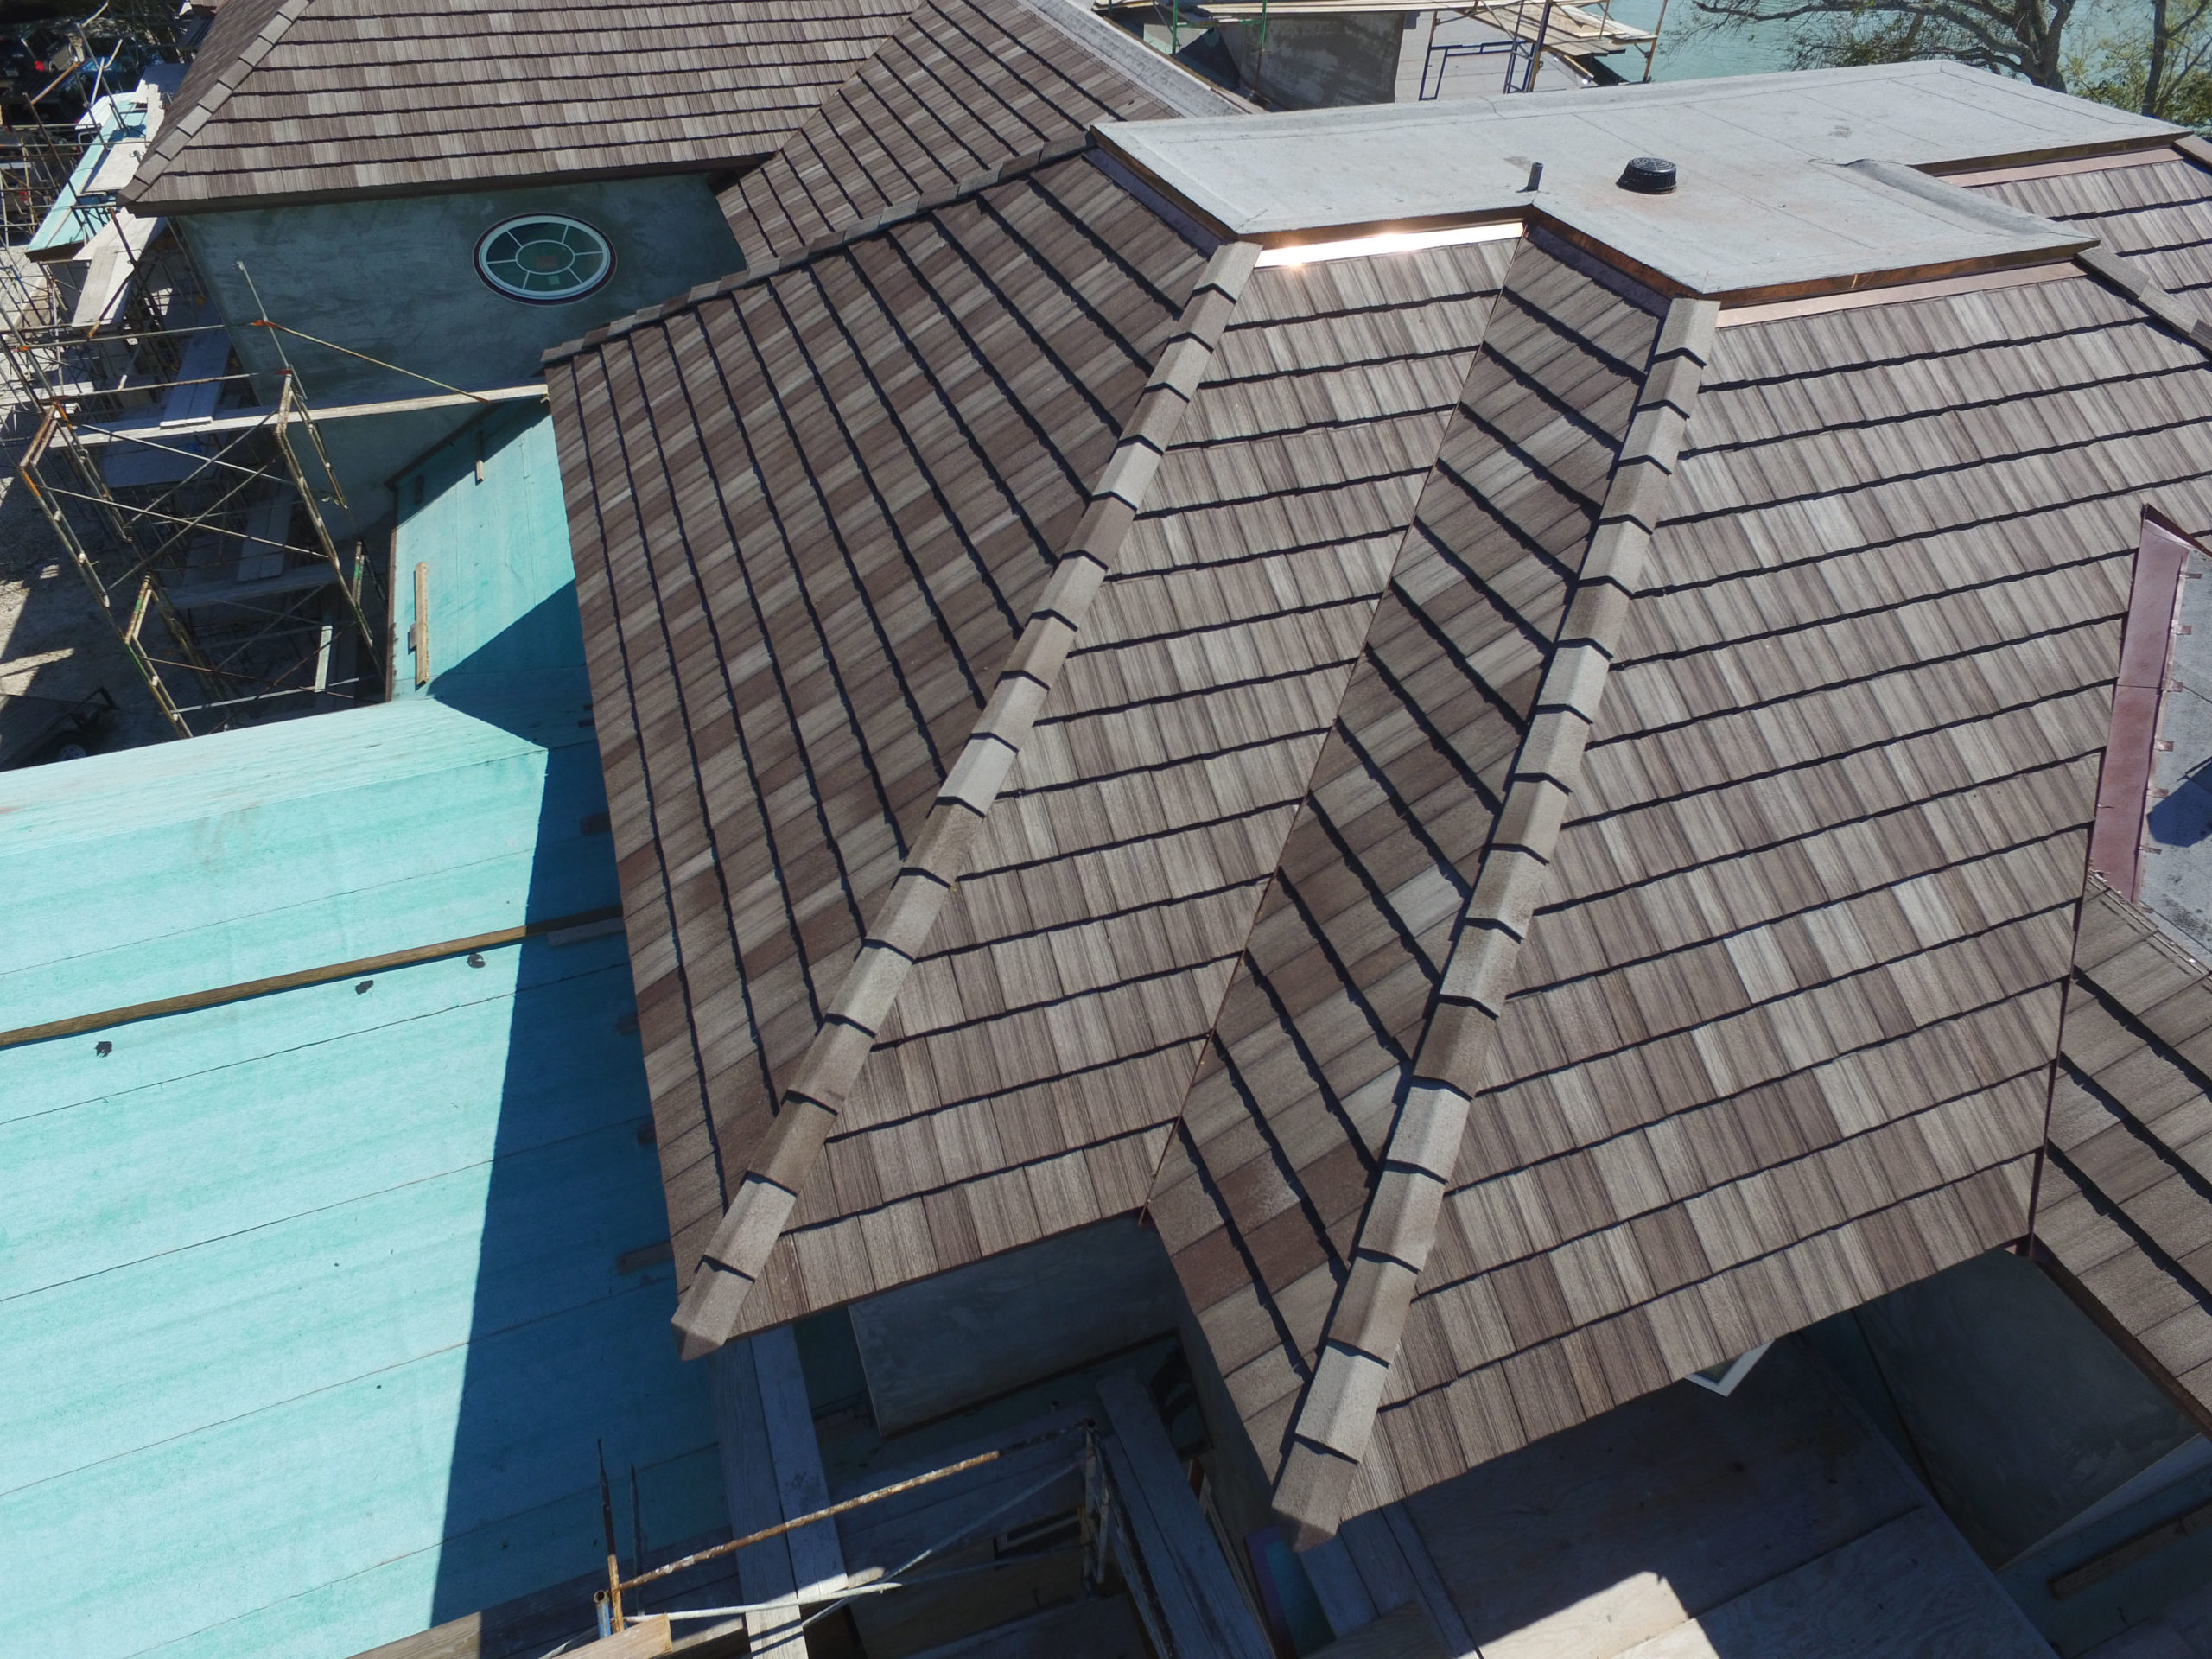 Naples, FL Residence Ludowici Roof Tile